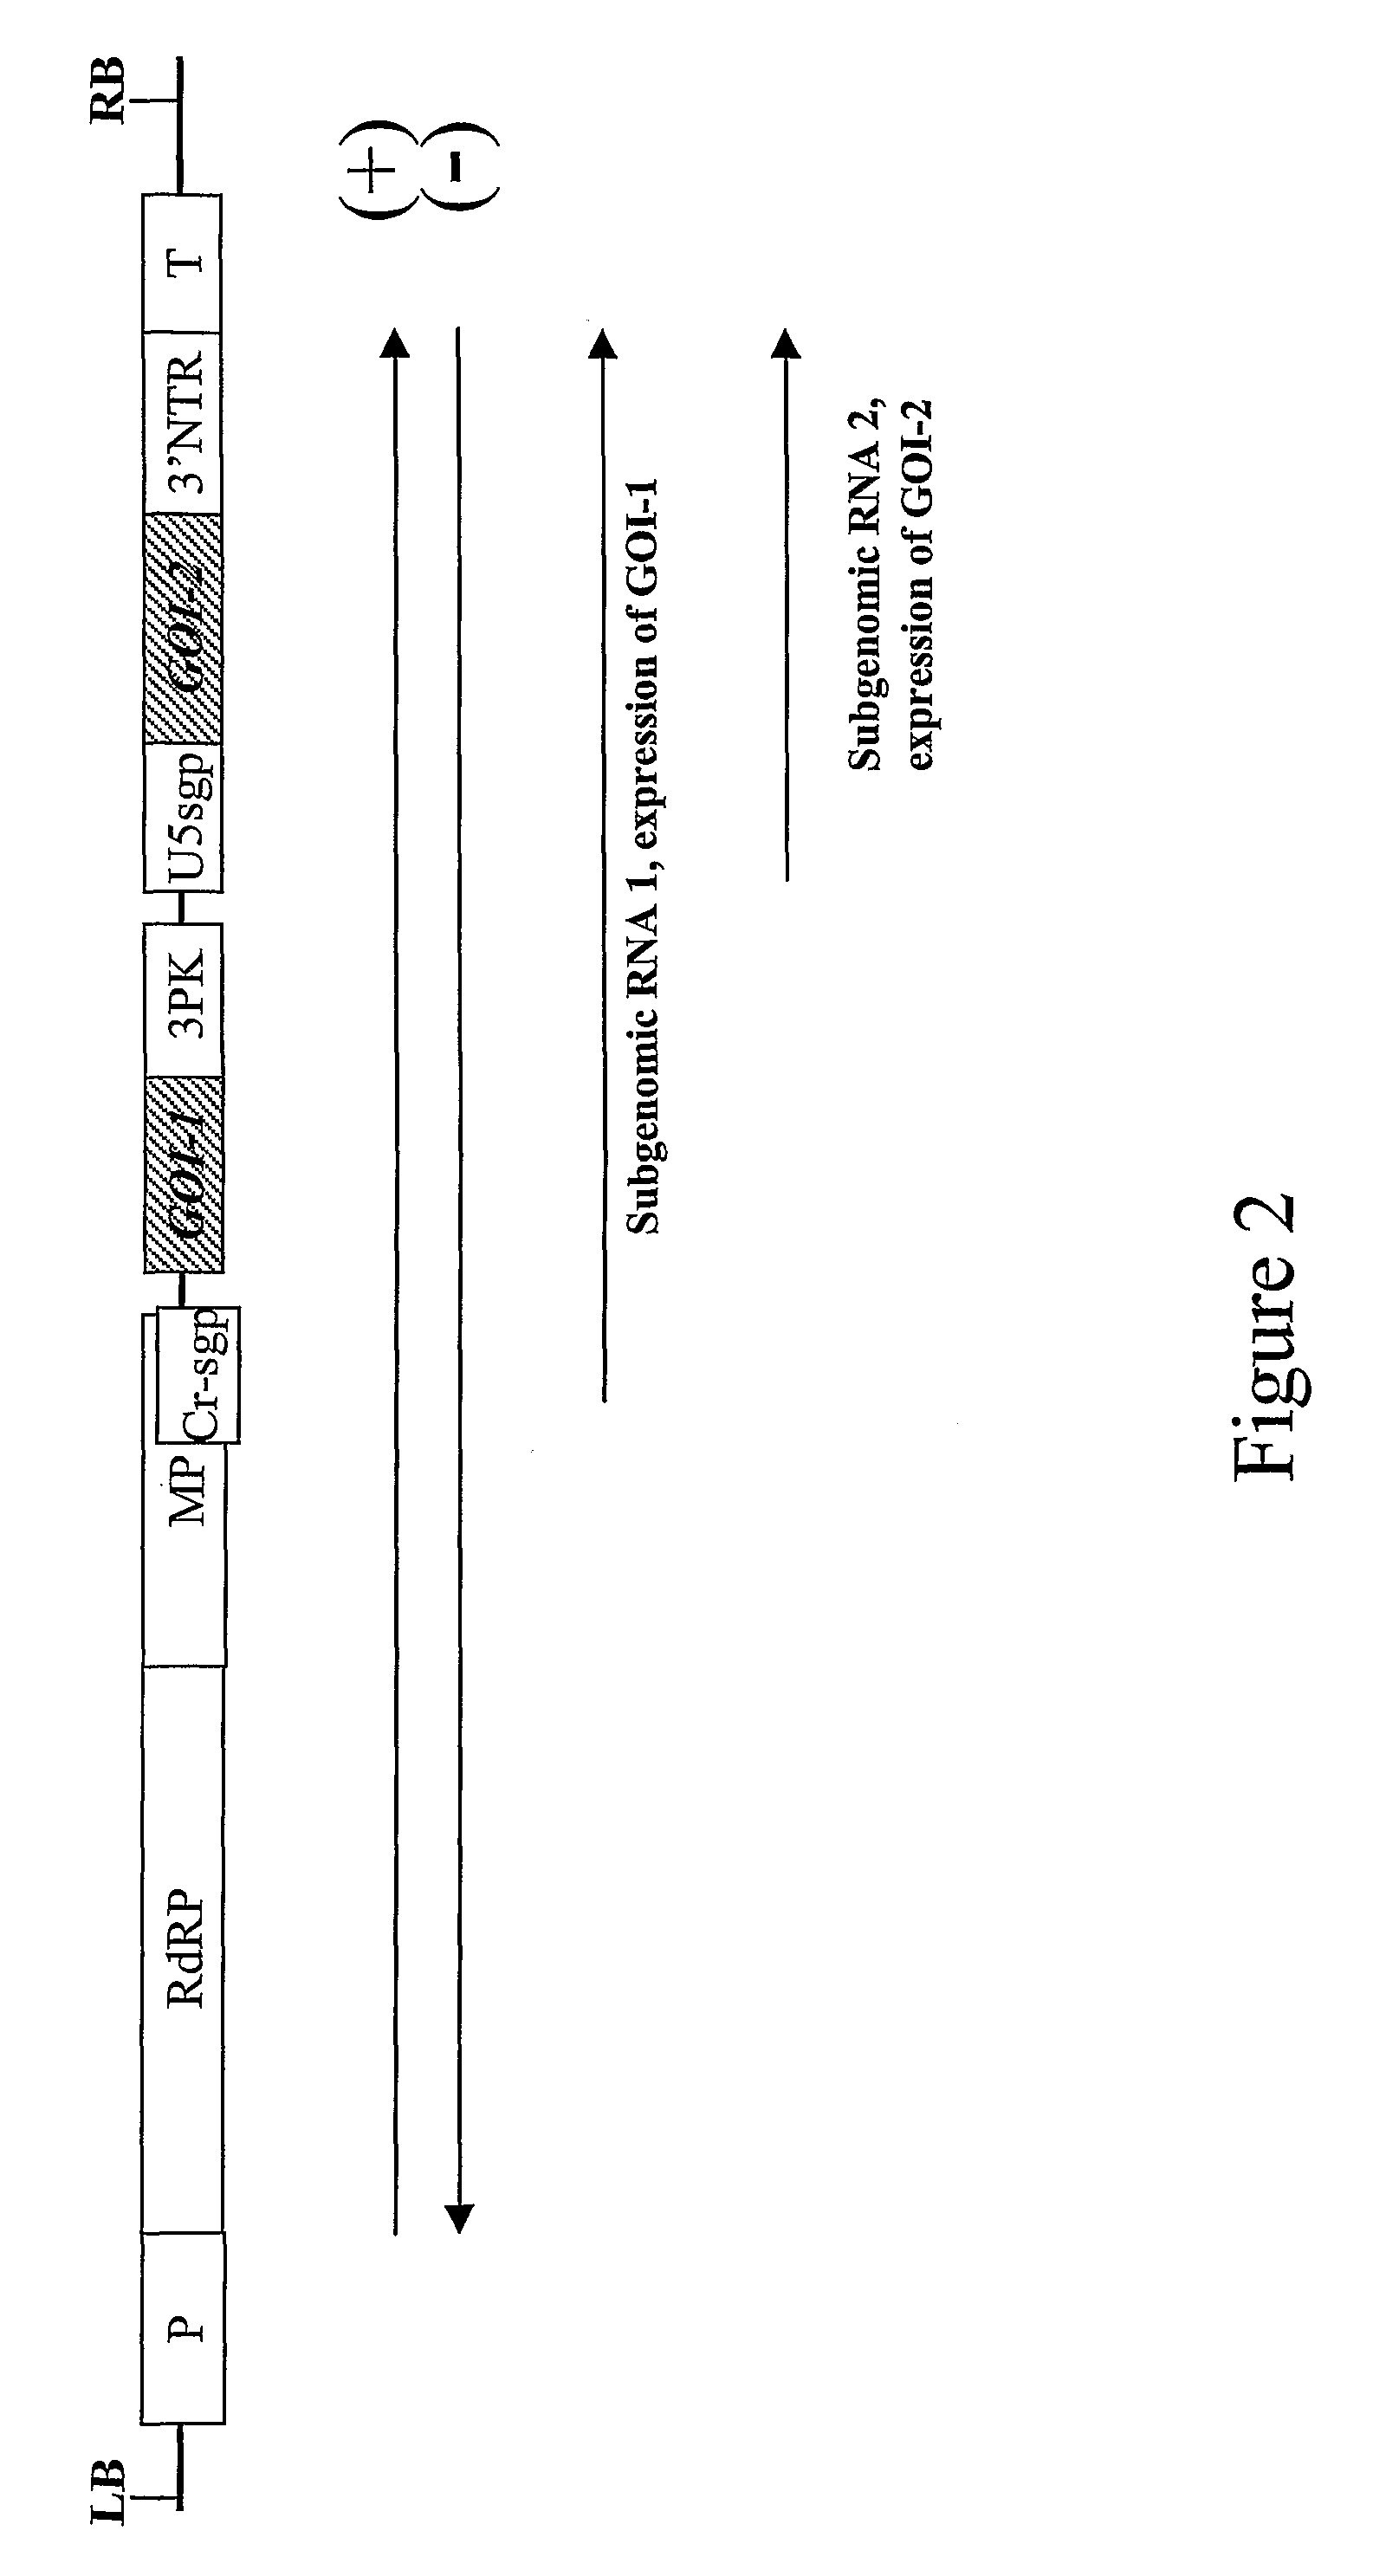 Production of hetero-oligomeric proteins in plants